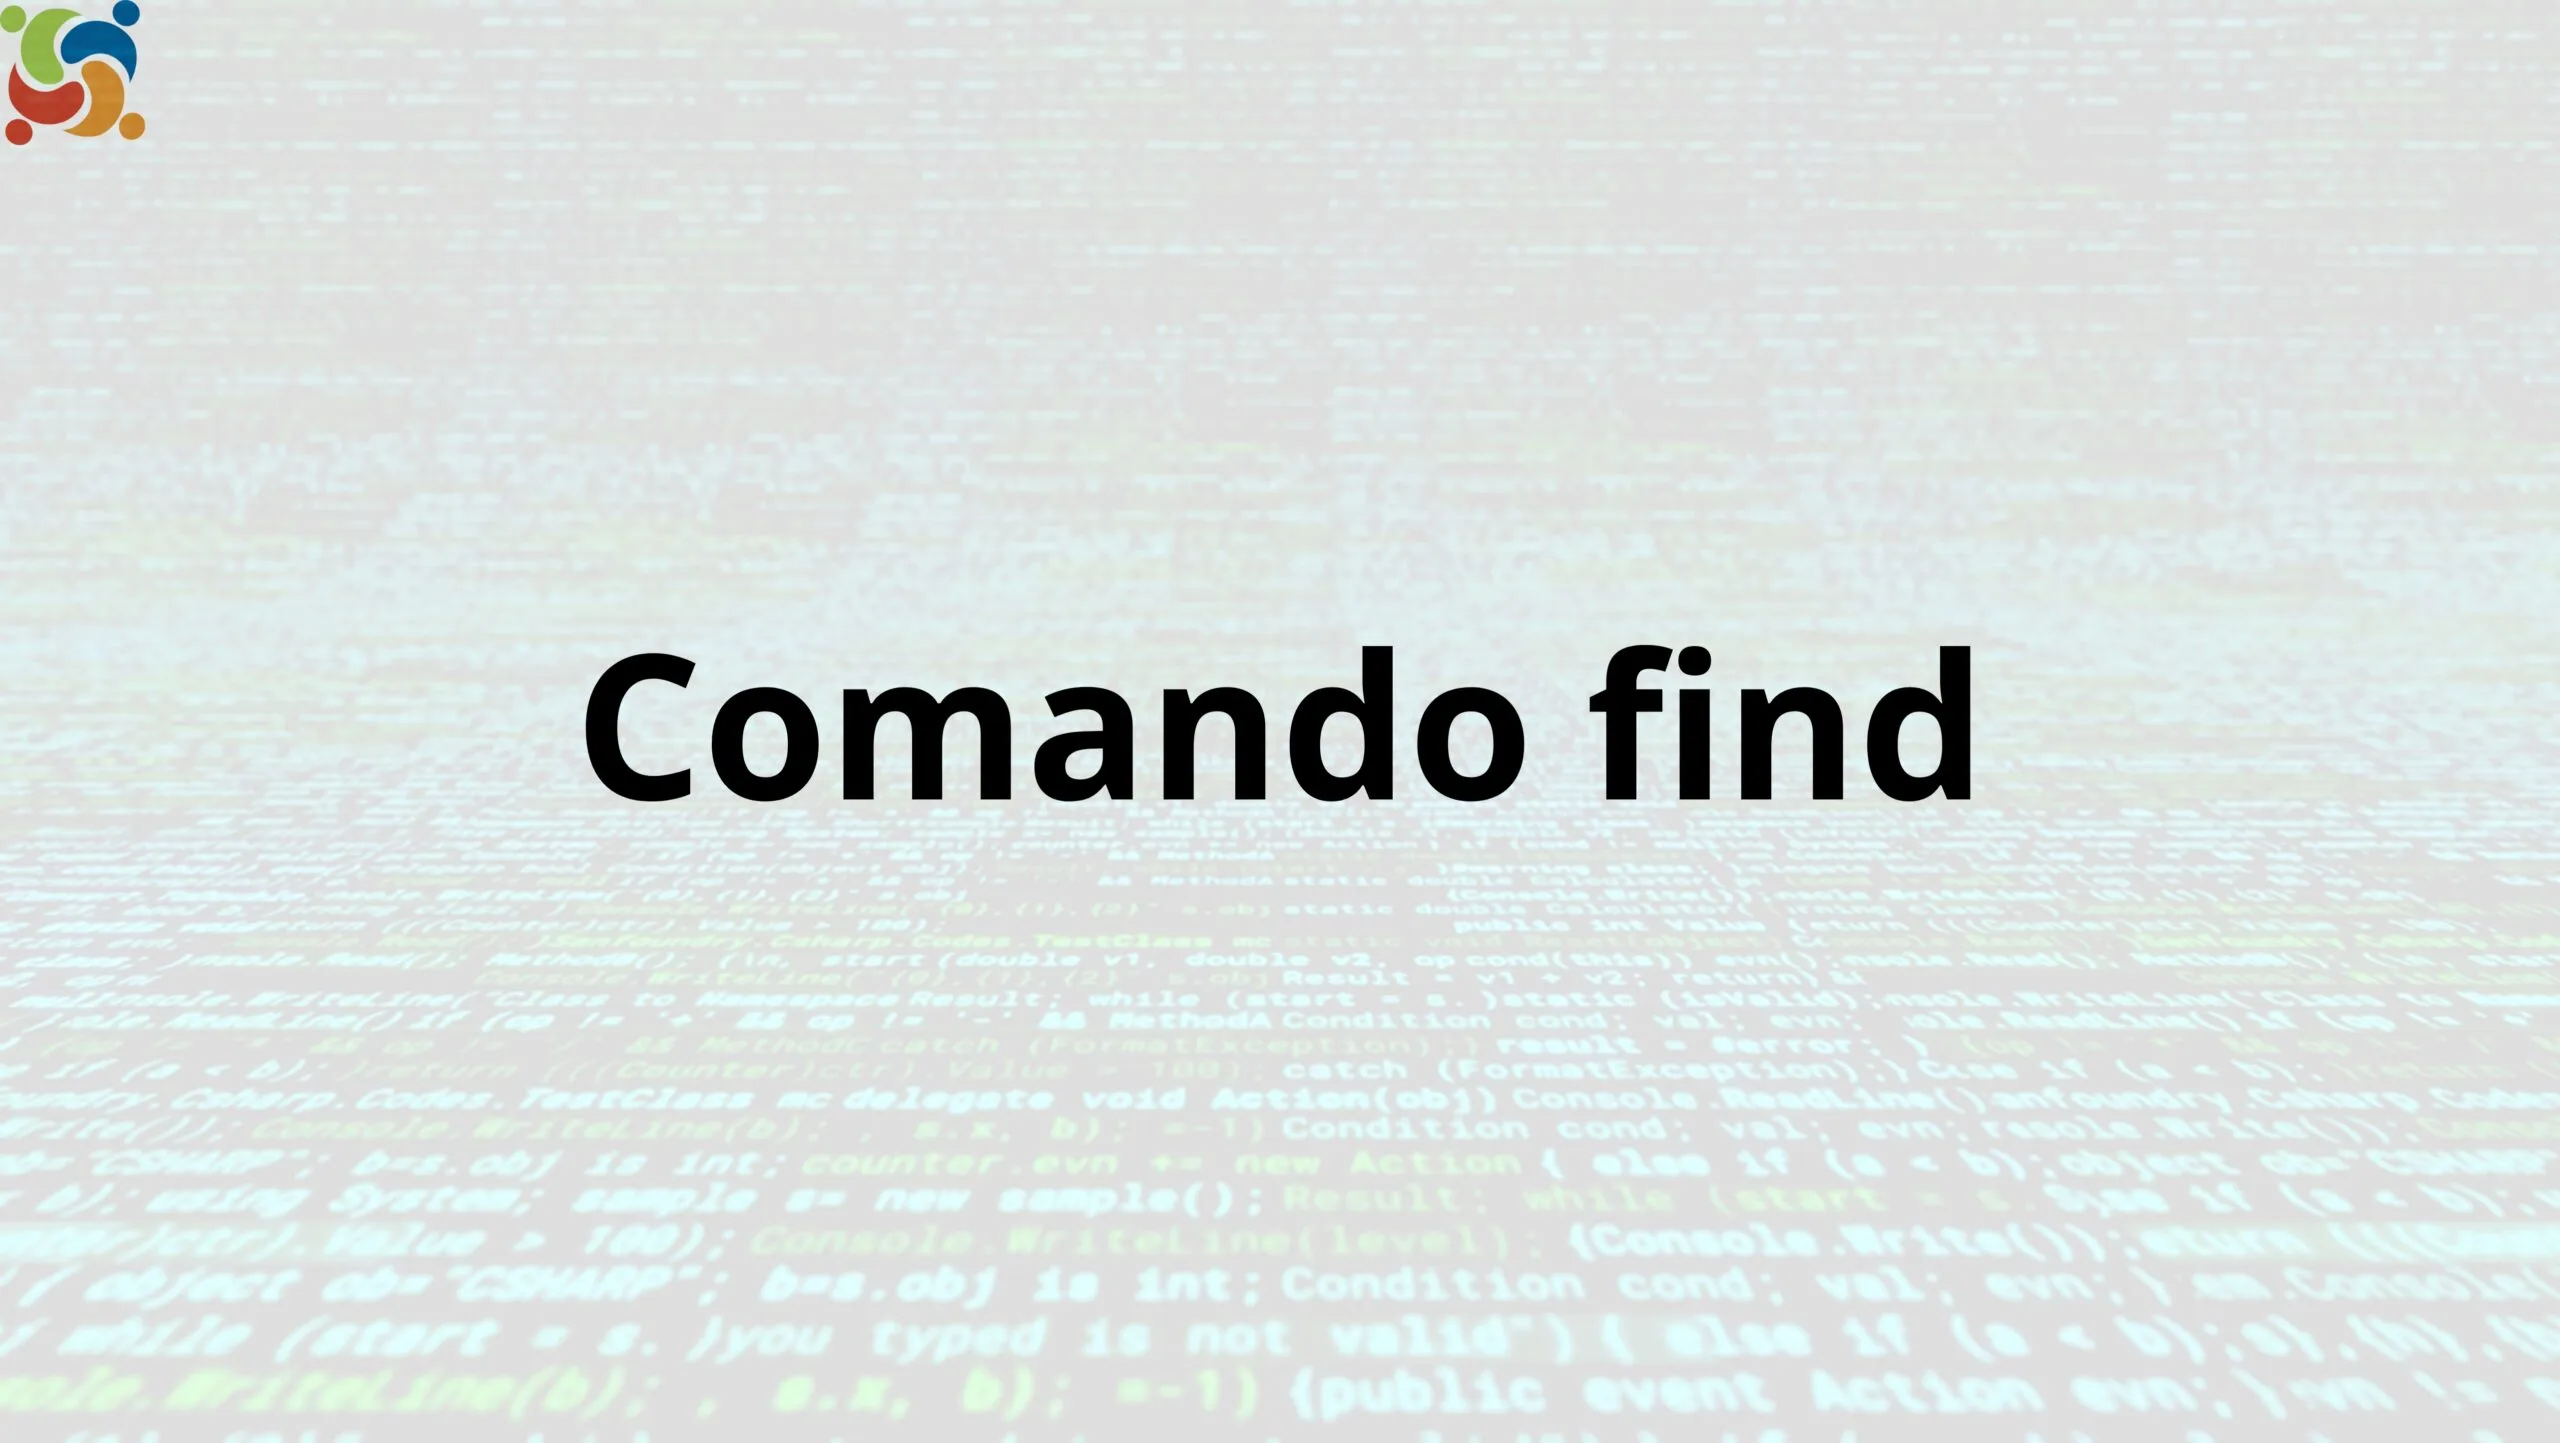 Comando Linux find: localize diretórios e arquivos